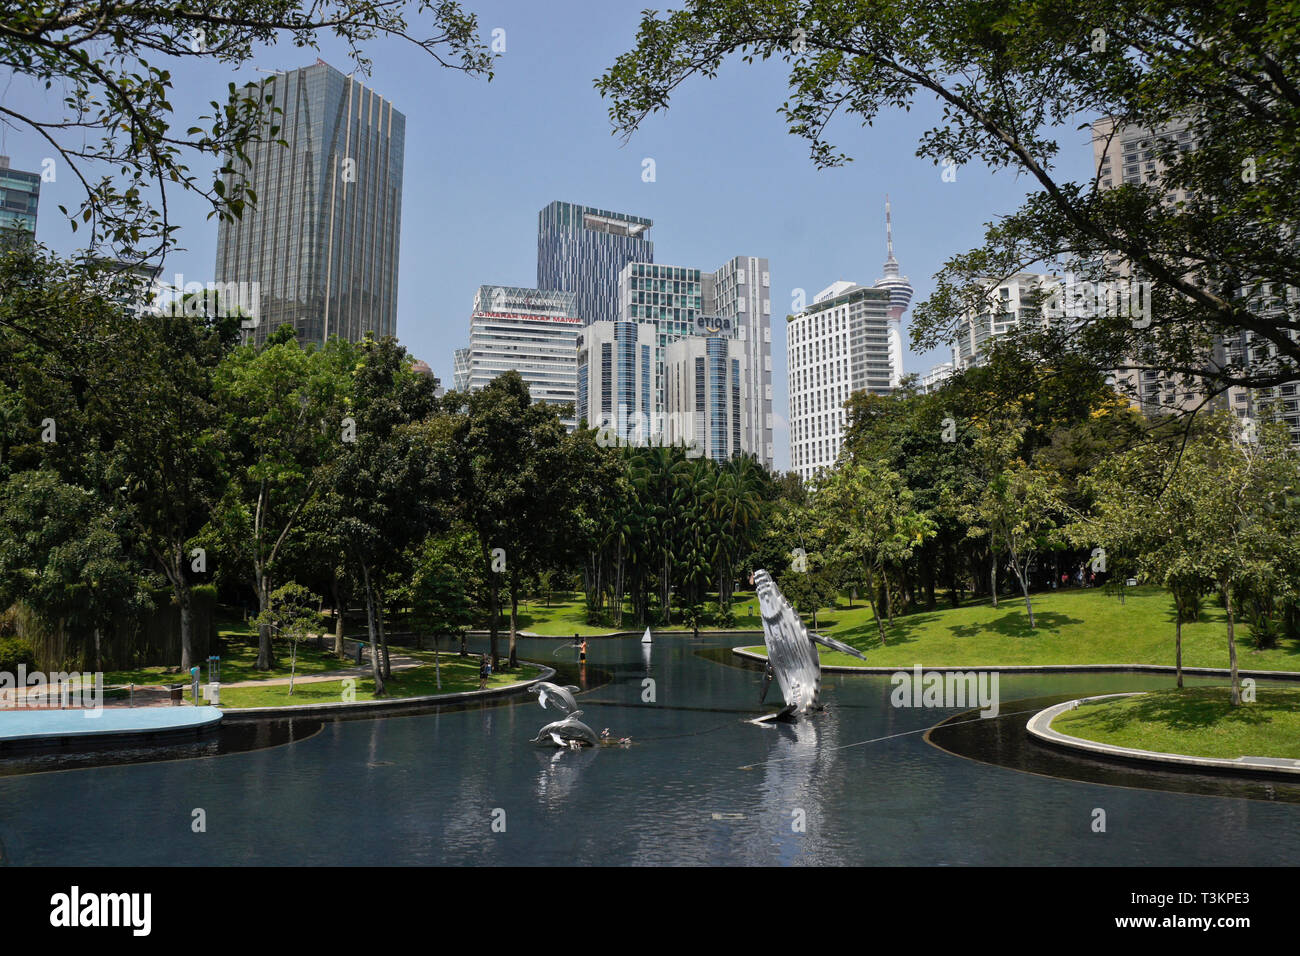 La Torre KL e il centro cittadino di grattacieli vista dal Parco KLCC, Kuala Lumpur, Malesia Foto Stock